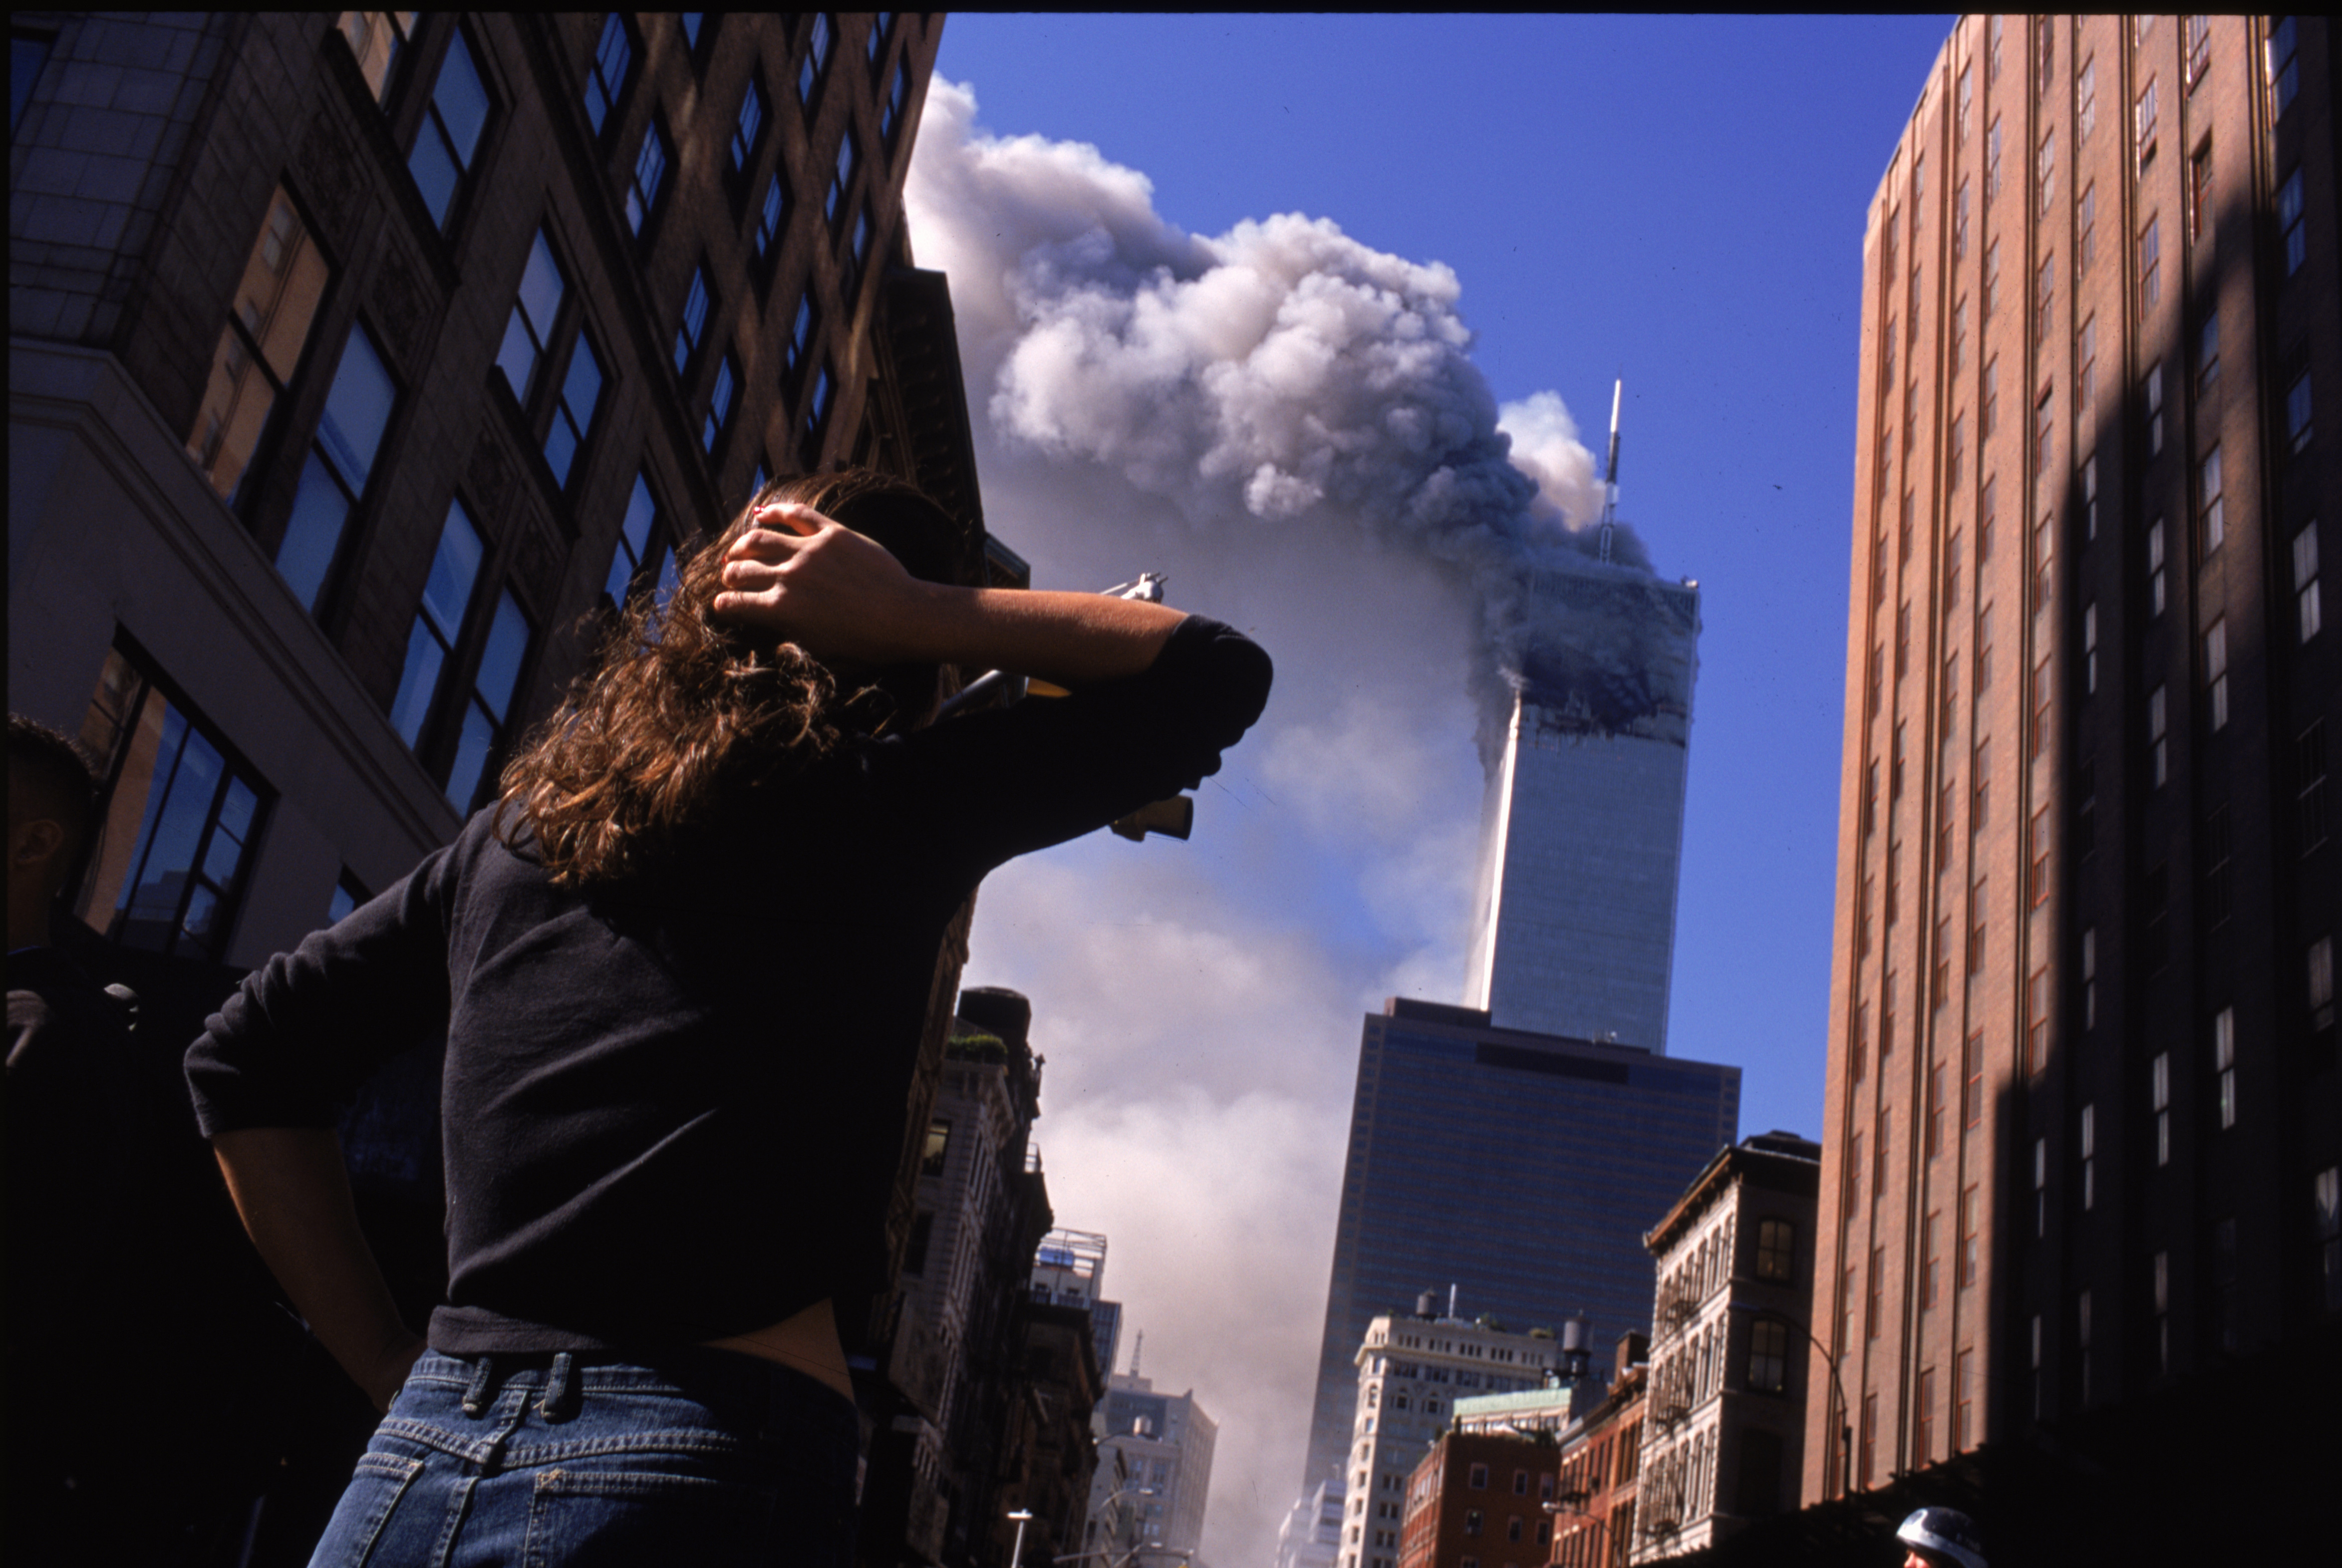 22 ноября 2001. Всемирный торговый центр в Нью-Йорке 11 сентября.